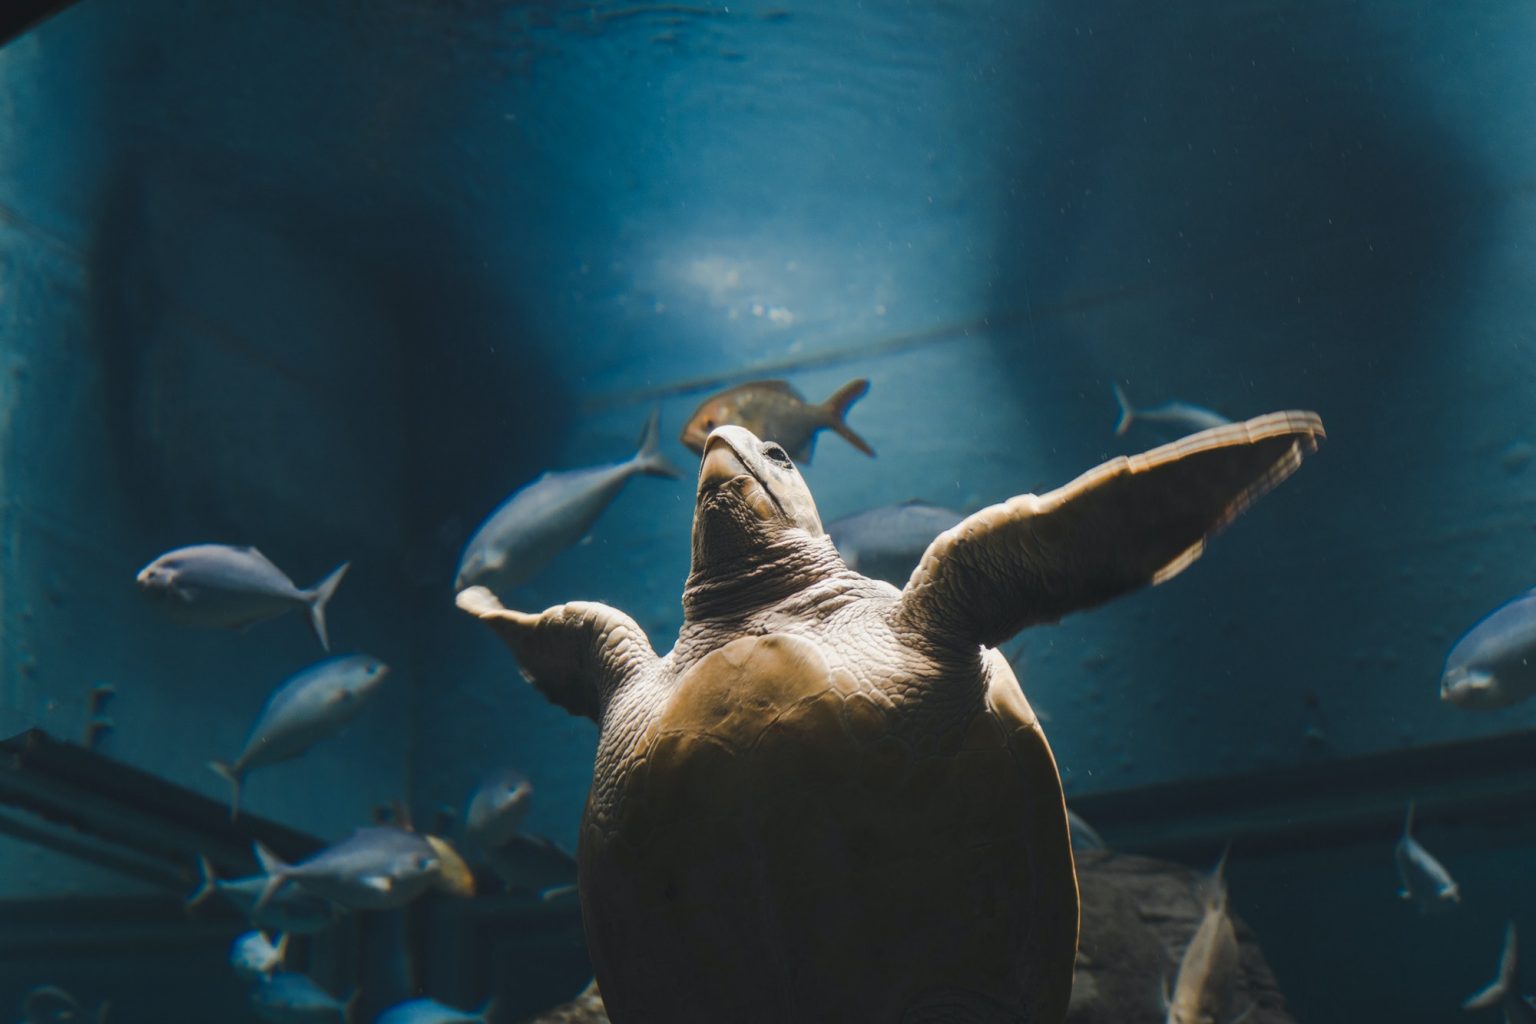 turtle-in-the-glass-cabinet-aquarium-.jpg